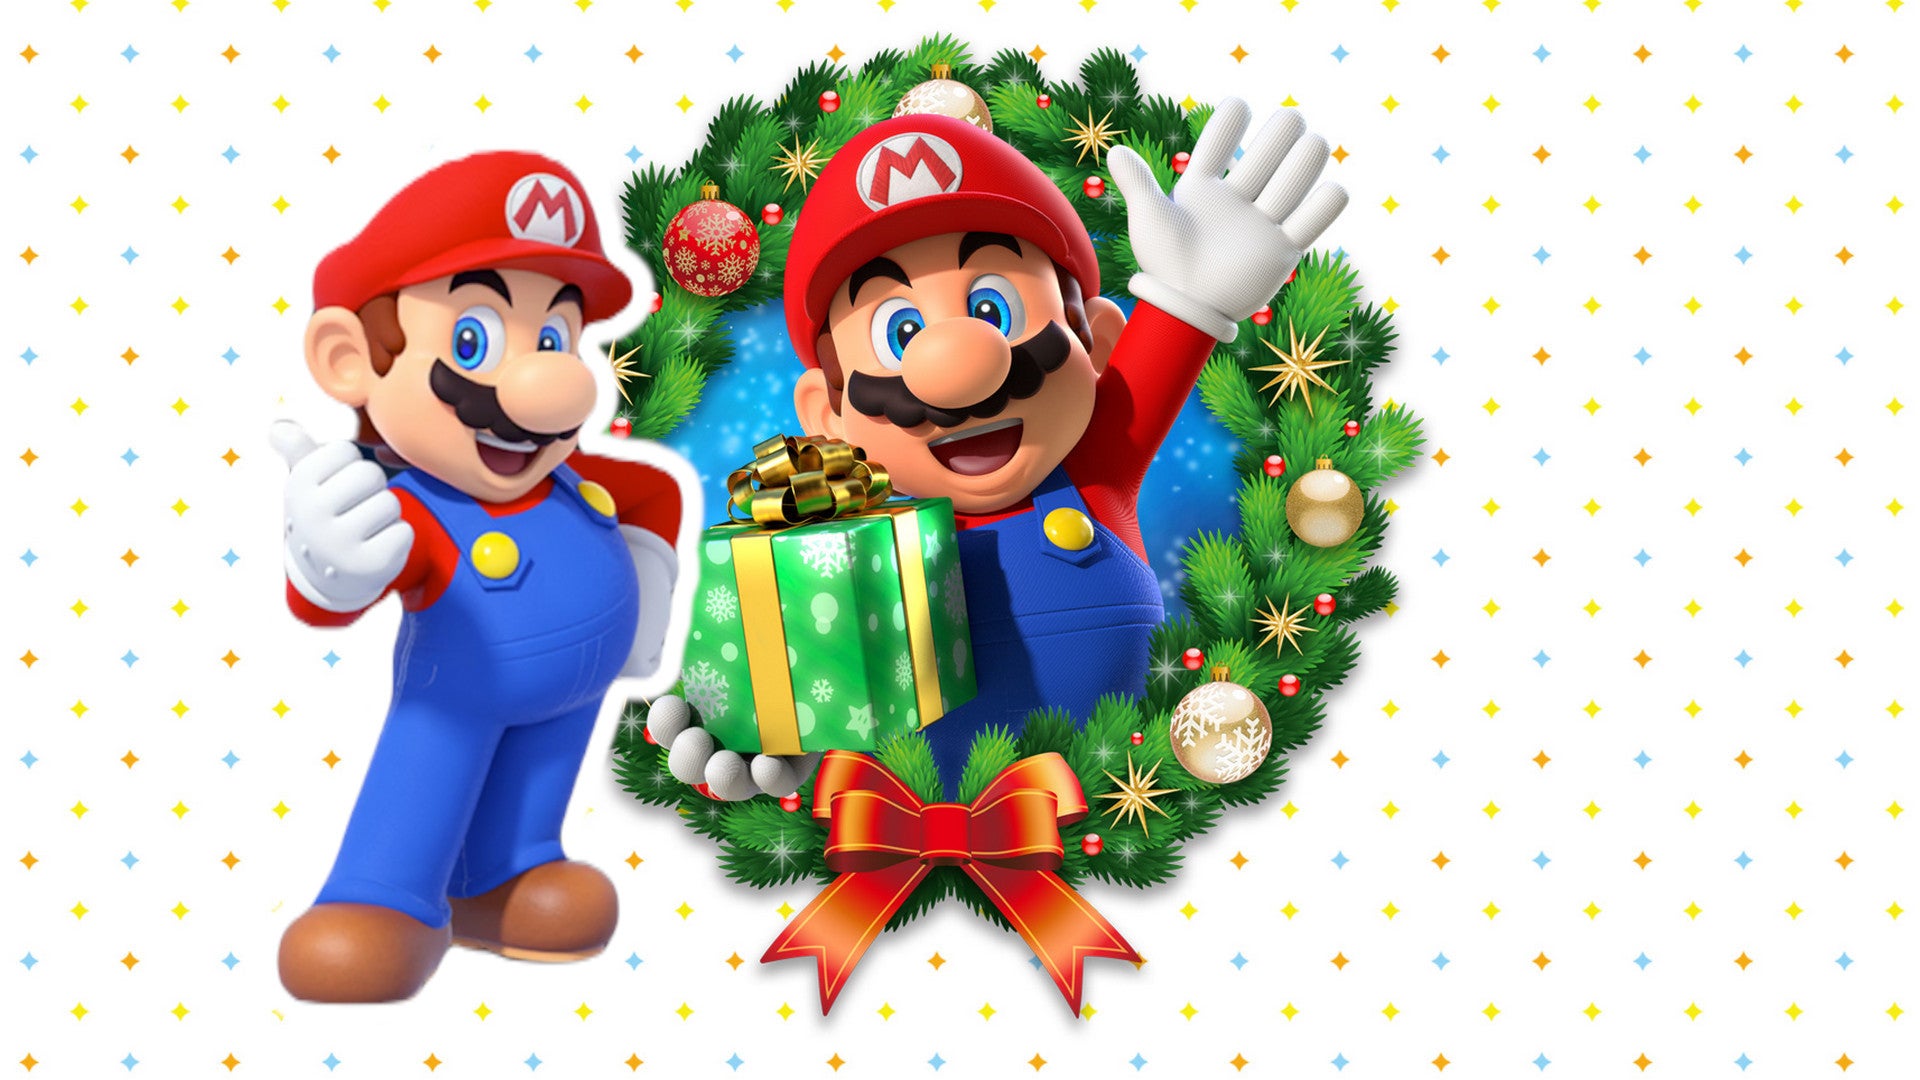 Nintendo geht mit der Switch auf Weihnachtstour 2022 - Alle Orte und Termine.